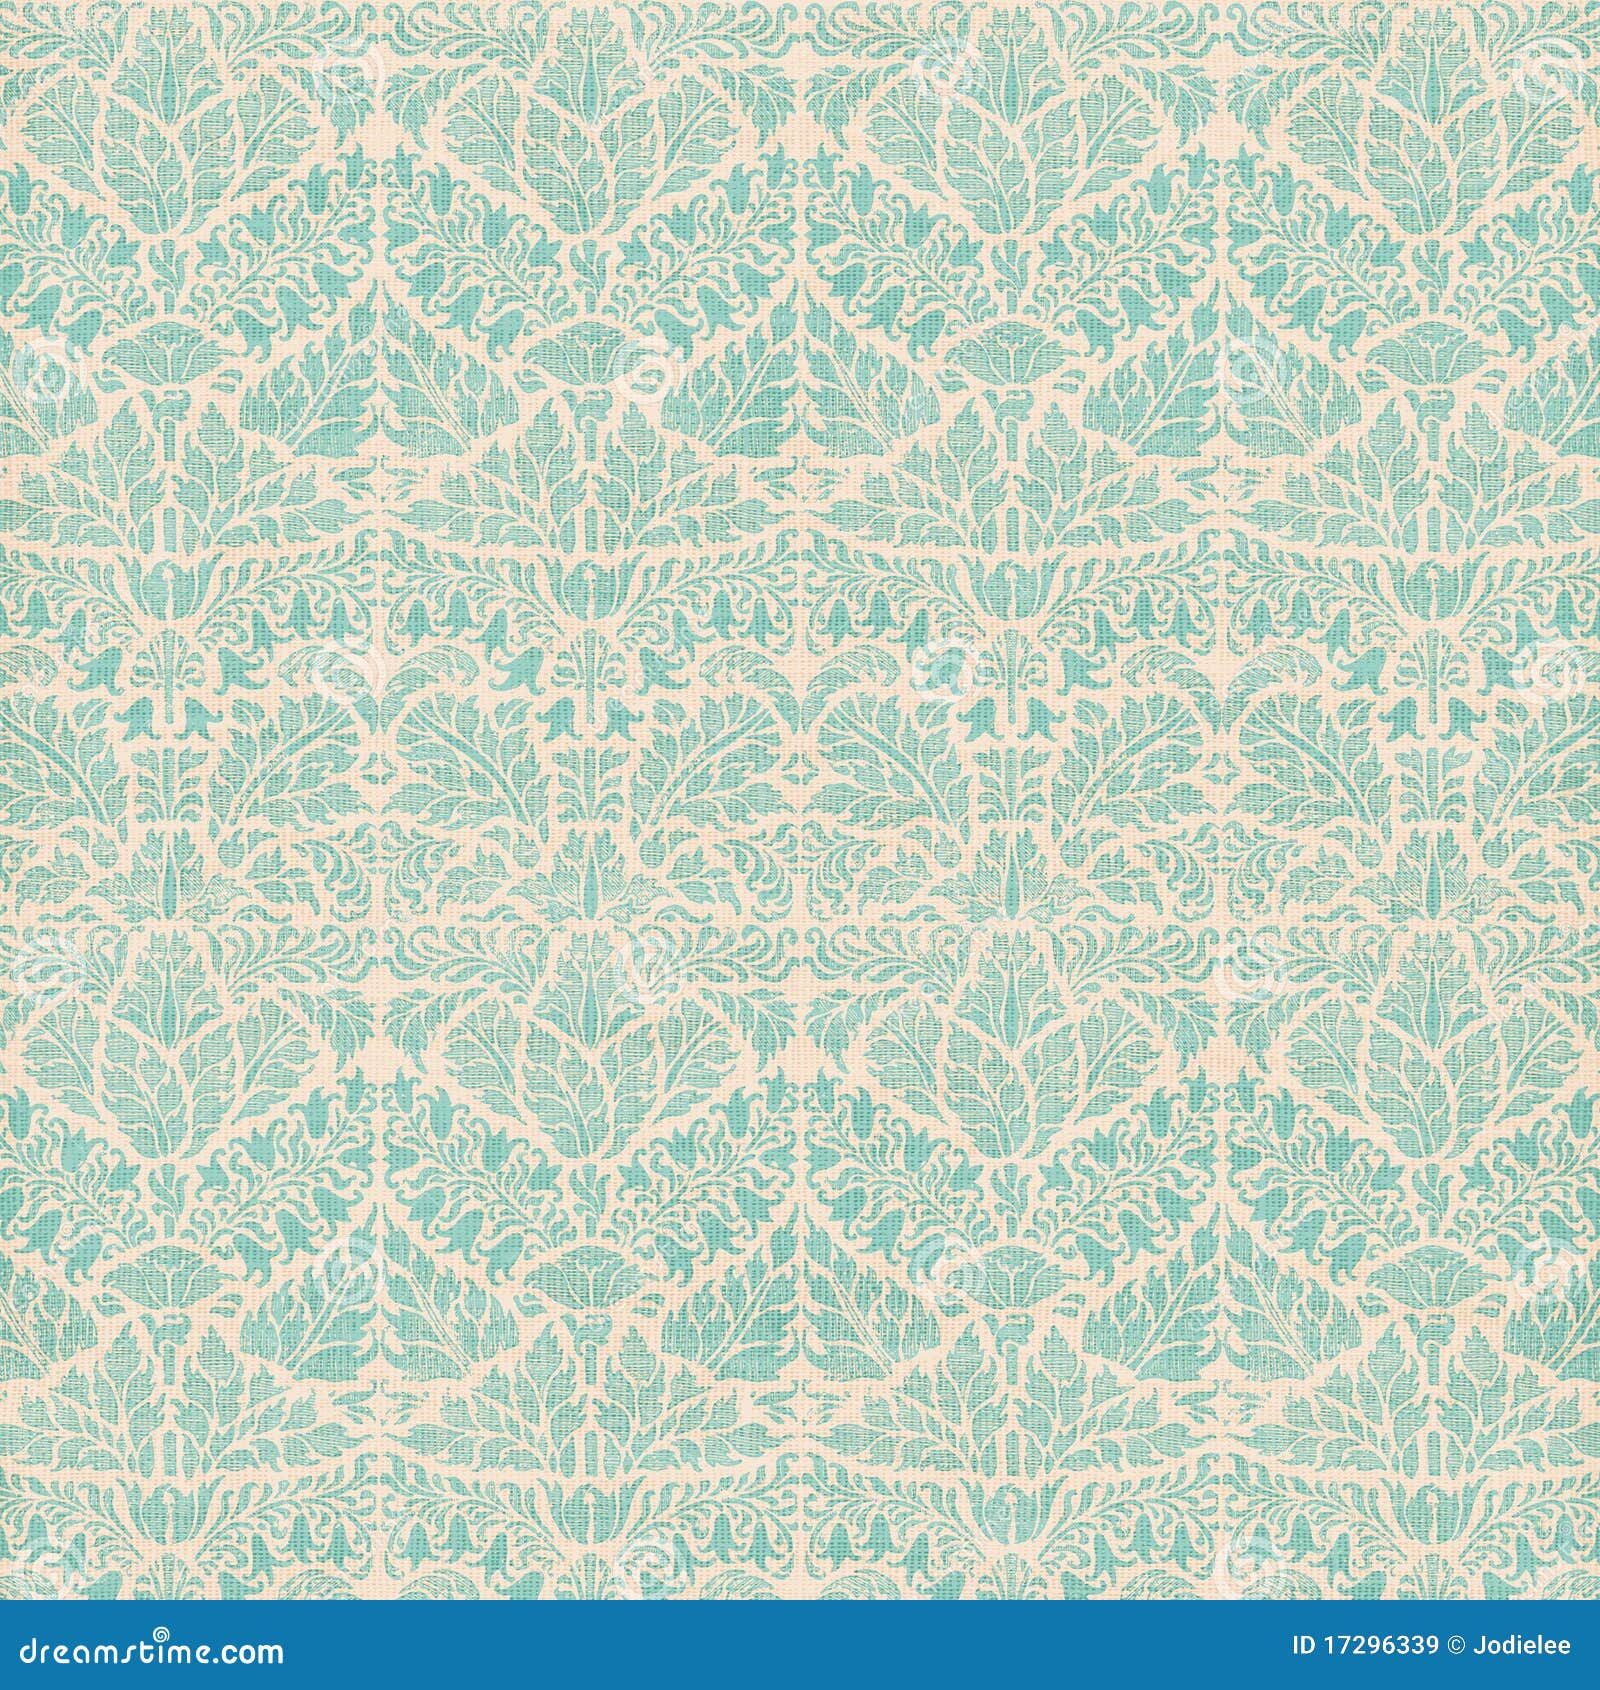 vintage damask scrapbook background pattern